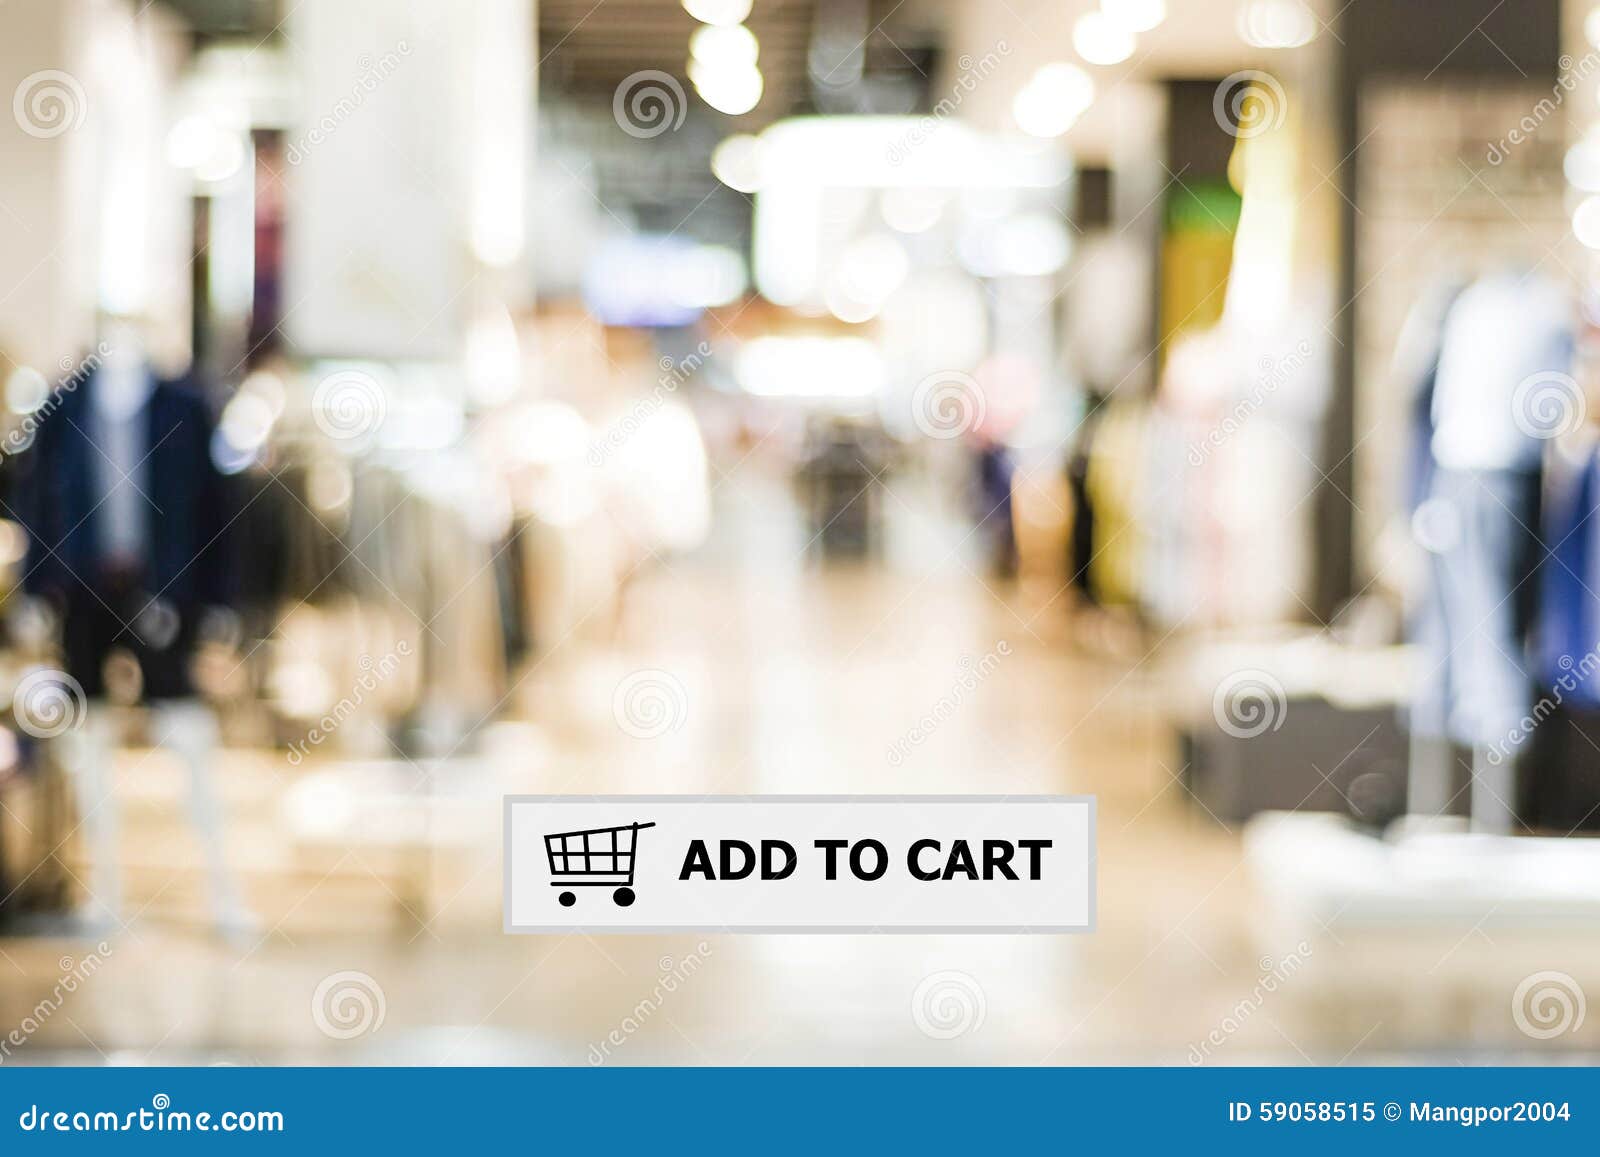 Thêm vào giỏ hàng là công đoạn quan trọng giúp bạn mua sắm trực tuyến dễ dàng hơn. Với nút thêm vào giỏ hàng, bạn có thể quản lý các mặt hàng mình muốn mua một cách dễ dàng. Hãy click vào hình ảnh để thêm sản phẩm vào giỏ hàng của mình nào.